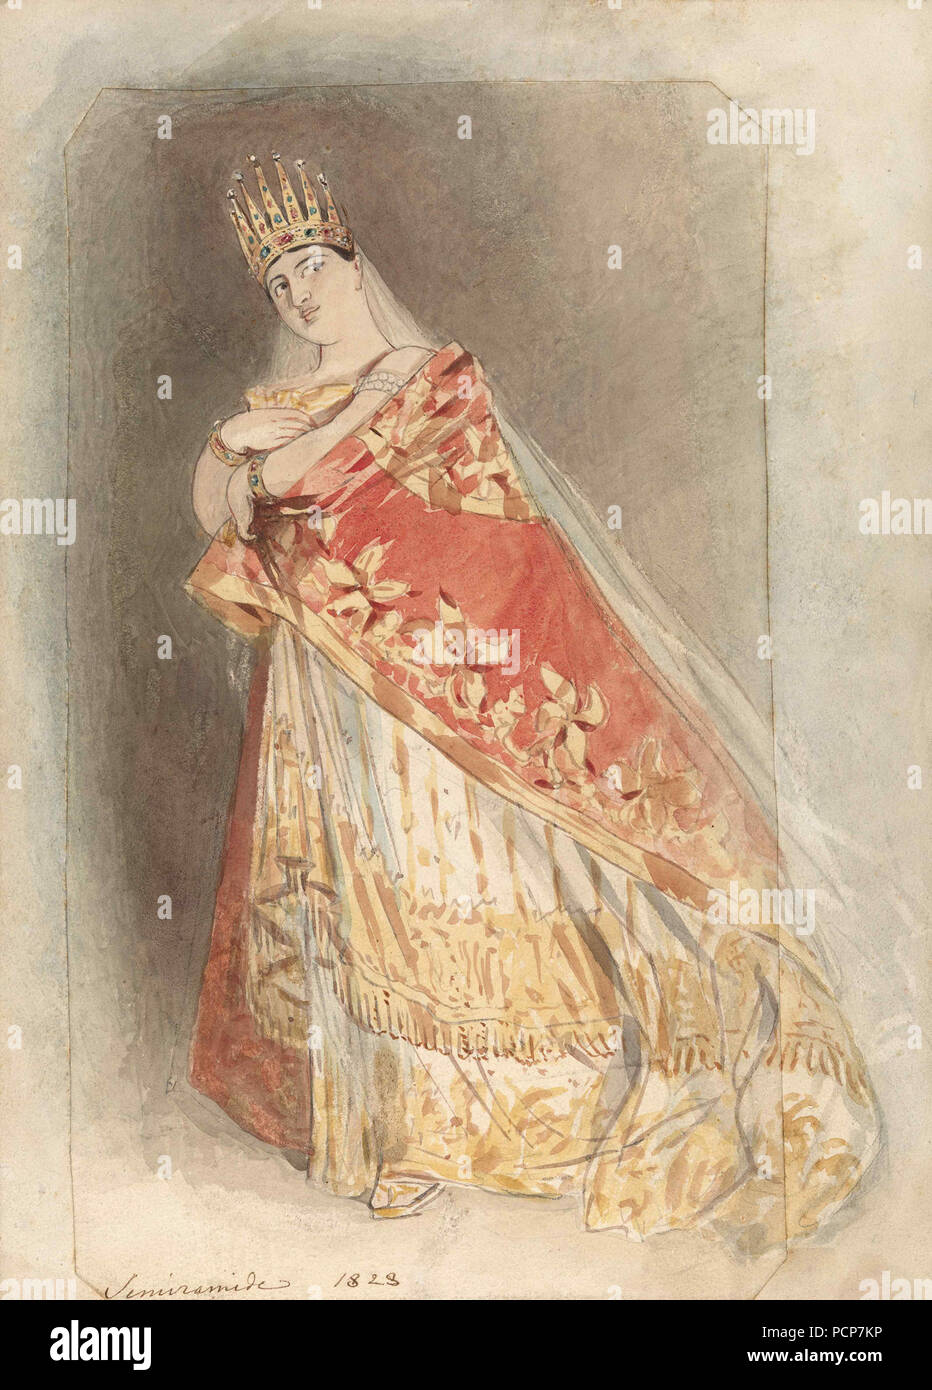 Giuditta Pasta (1798-1865) as Semiramide in the Opera by Gioachino Rossini , 1828. Stock Photo